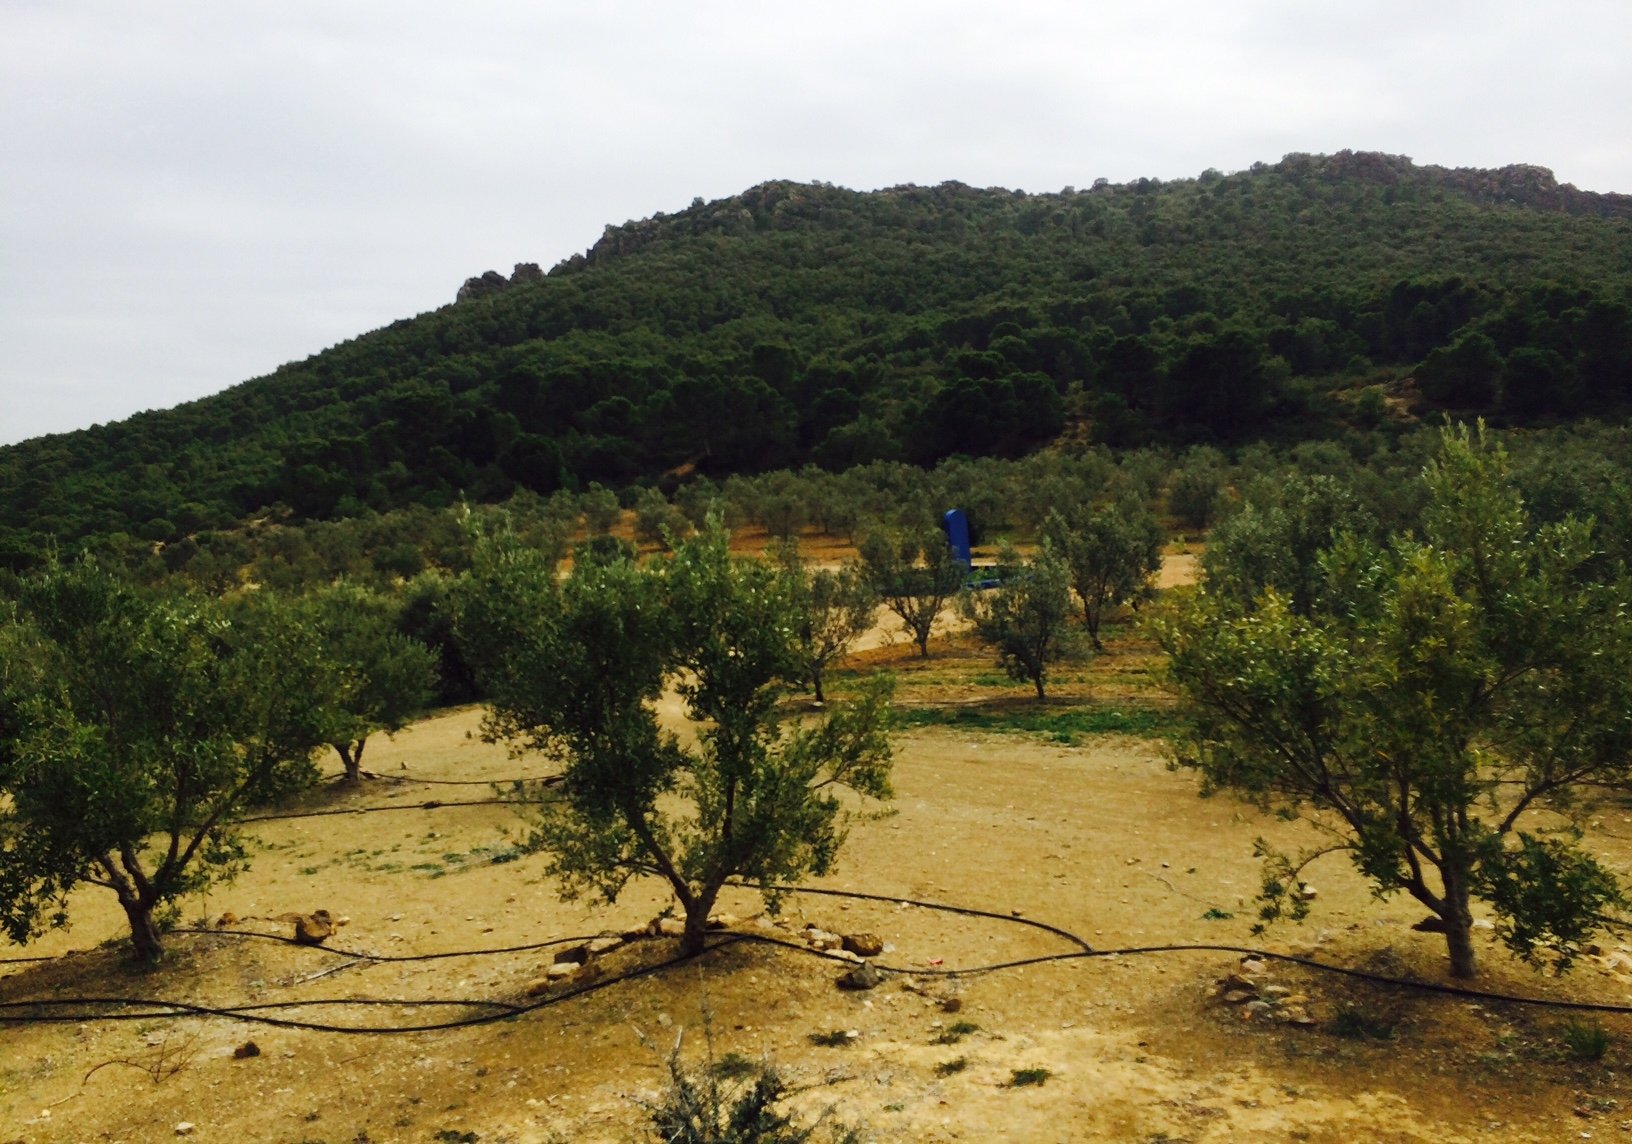 Olive farming in Tunisia